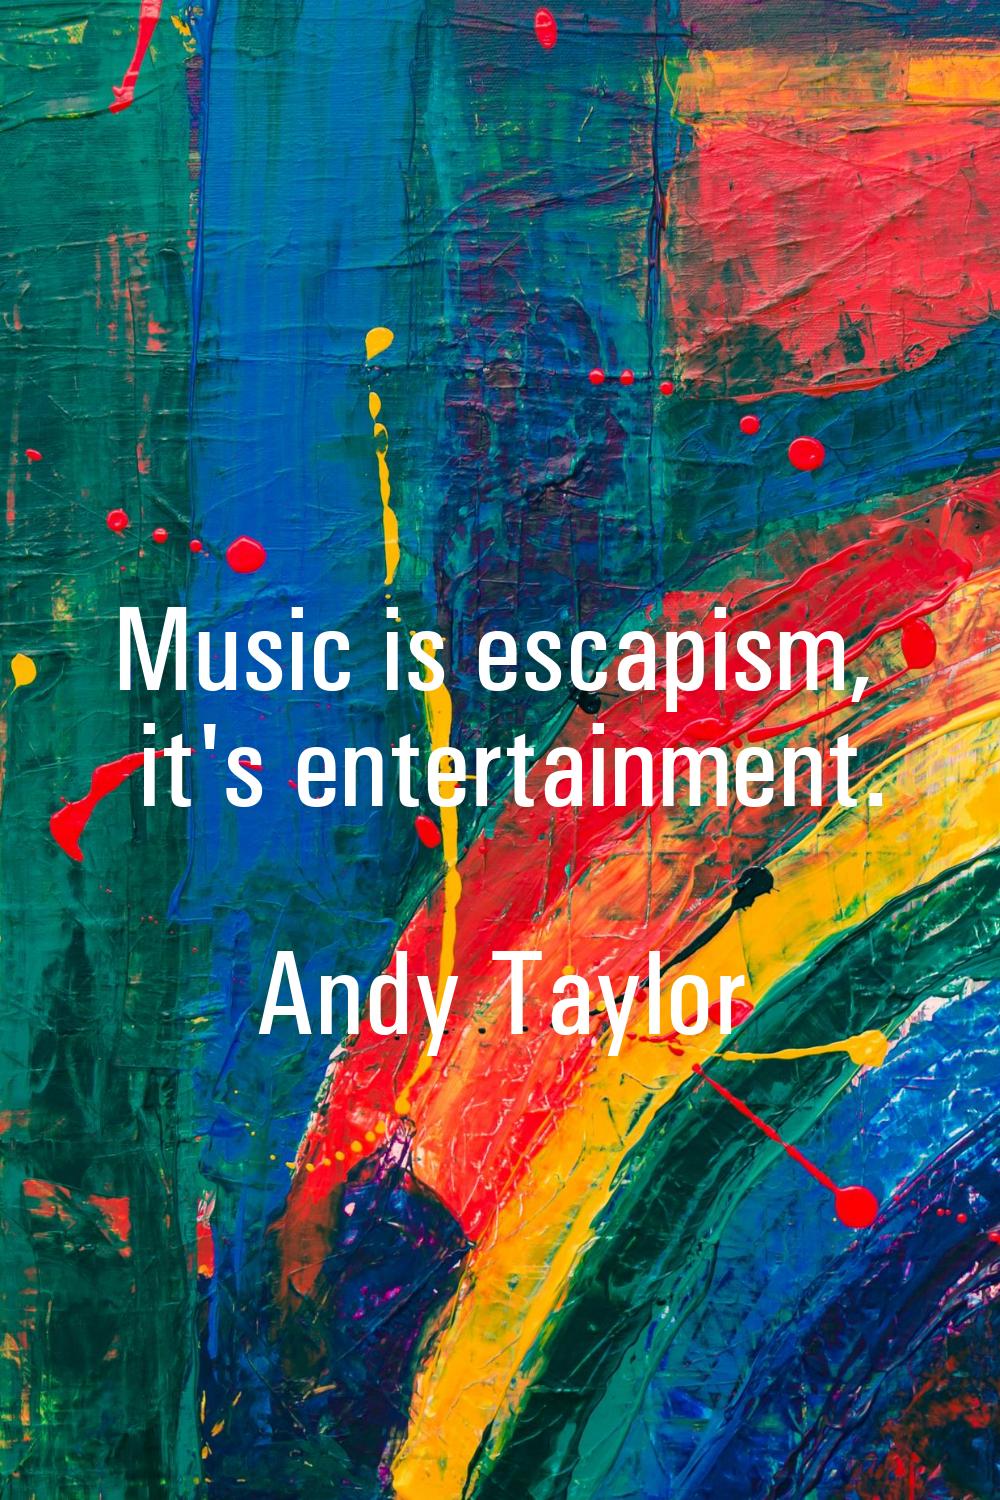 Music is escapism, it's entertainment.